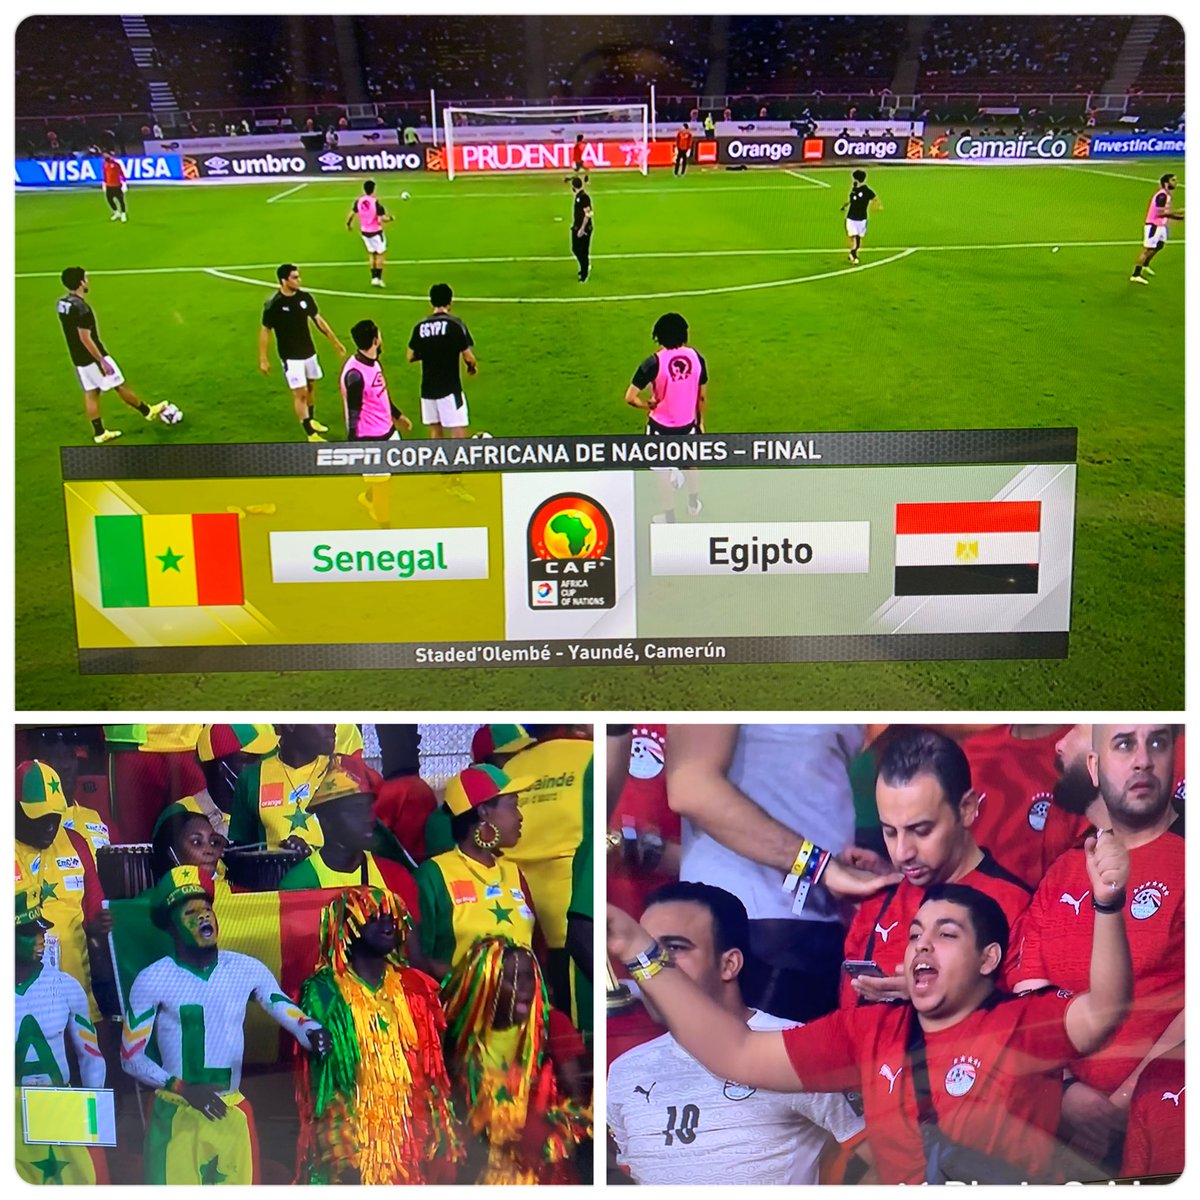 Gran fiesta, dentro y fuera de la cancha. Se viene la final de la Copa Africana de Naciones. #Senegal vs #Egipto #Mane vs #Salah Te esperamos con @wolffpedro por ESPN 2 (15:50hs) #futbolxespn